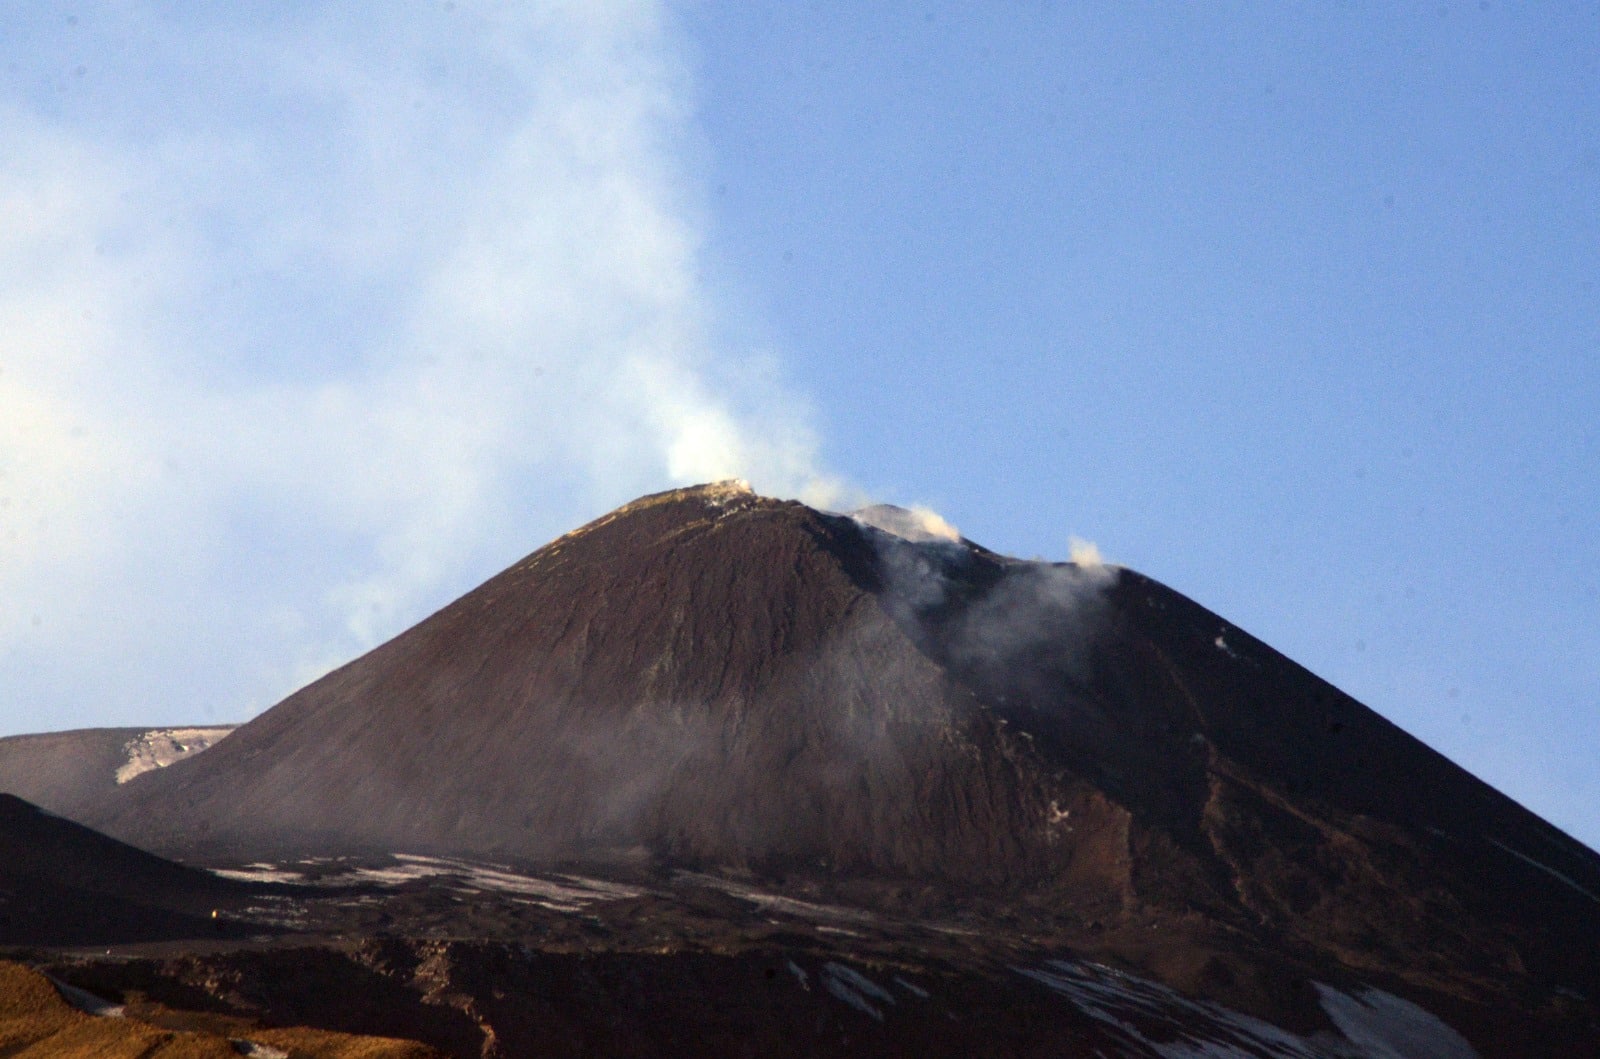 Etna in eruzione, modesto trabocco lavico: il tremore vulcanico raggiunge un livello elevato